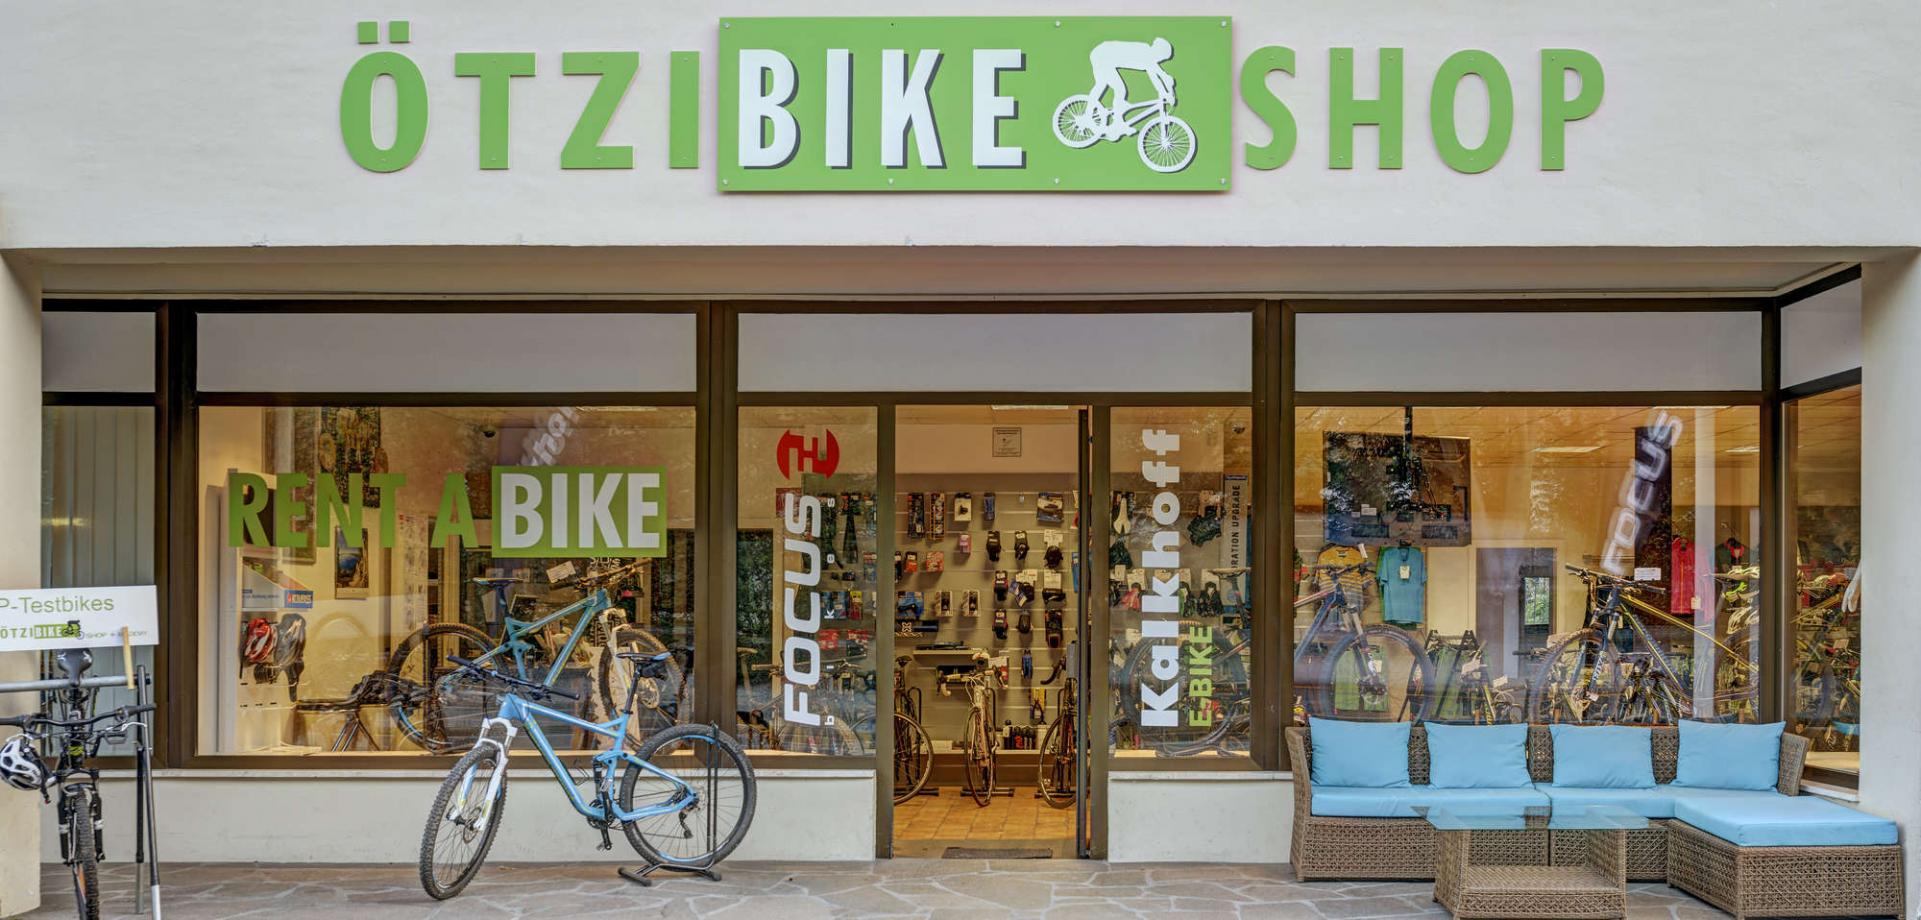 Oetzi Bike Shop a Naturno in Alto Adige. Noleggio, vendita, reparature e abbigliamento.